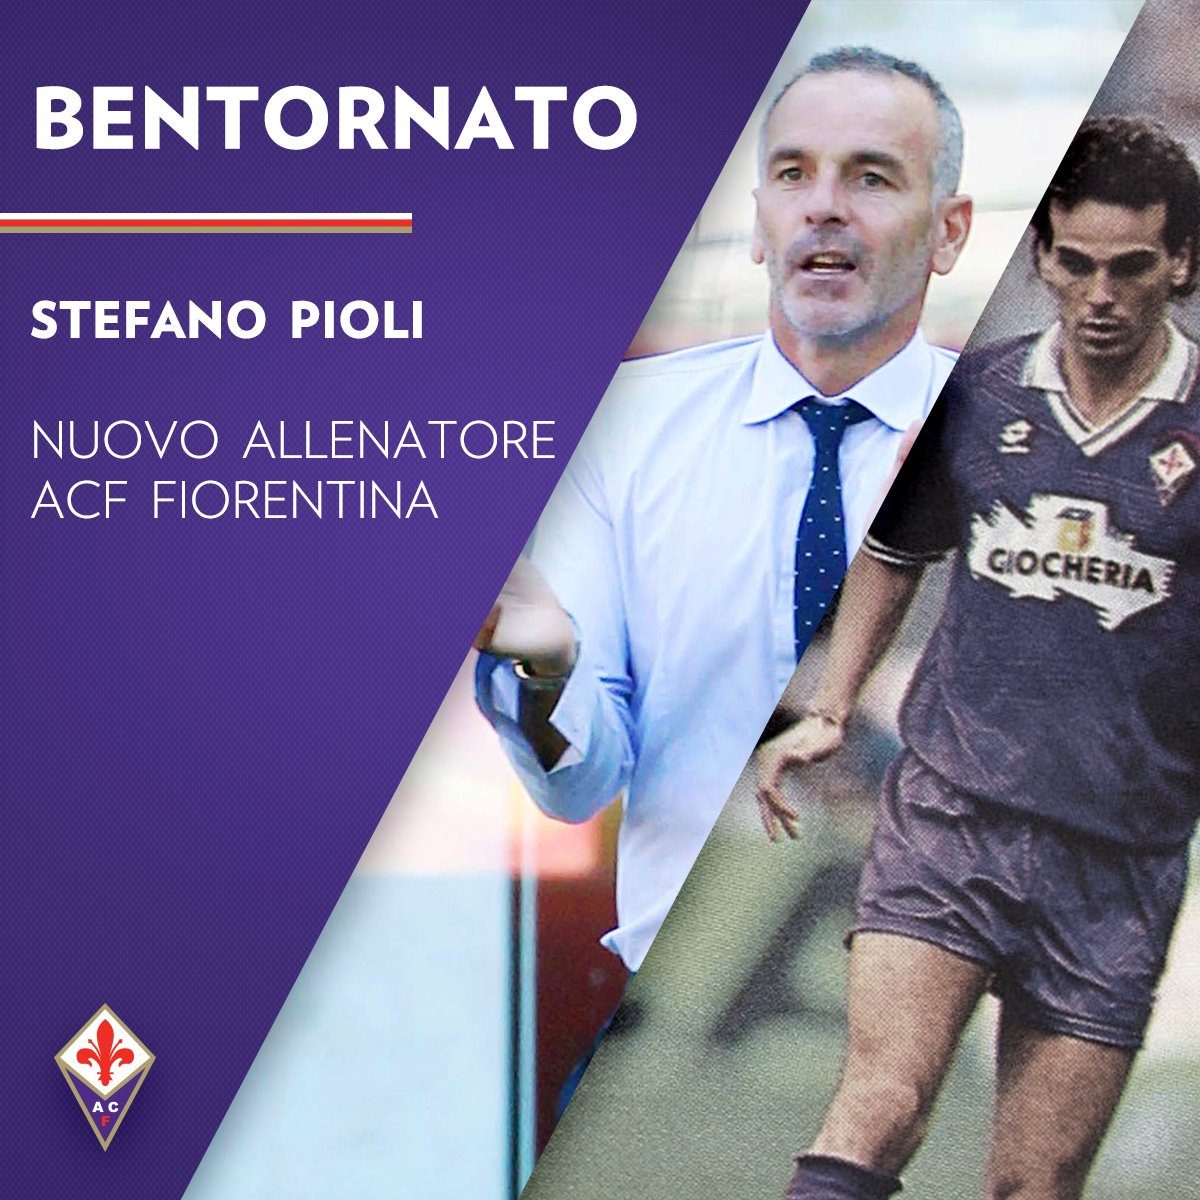 Stefano Pioli kembali ke Fiorentina sebagai pelatih. Foto dari Twitter/@acffiorentina 